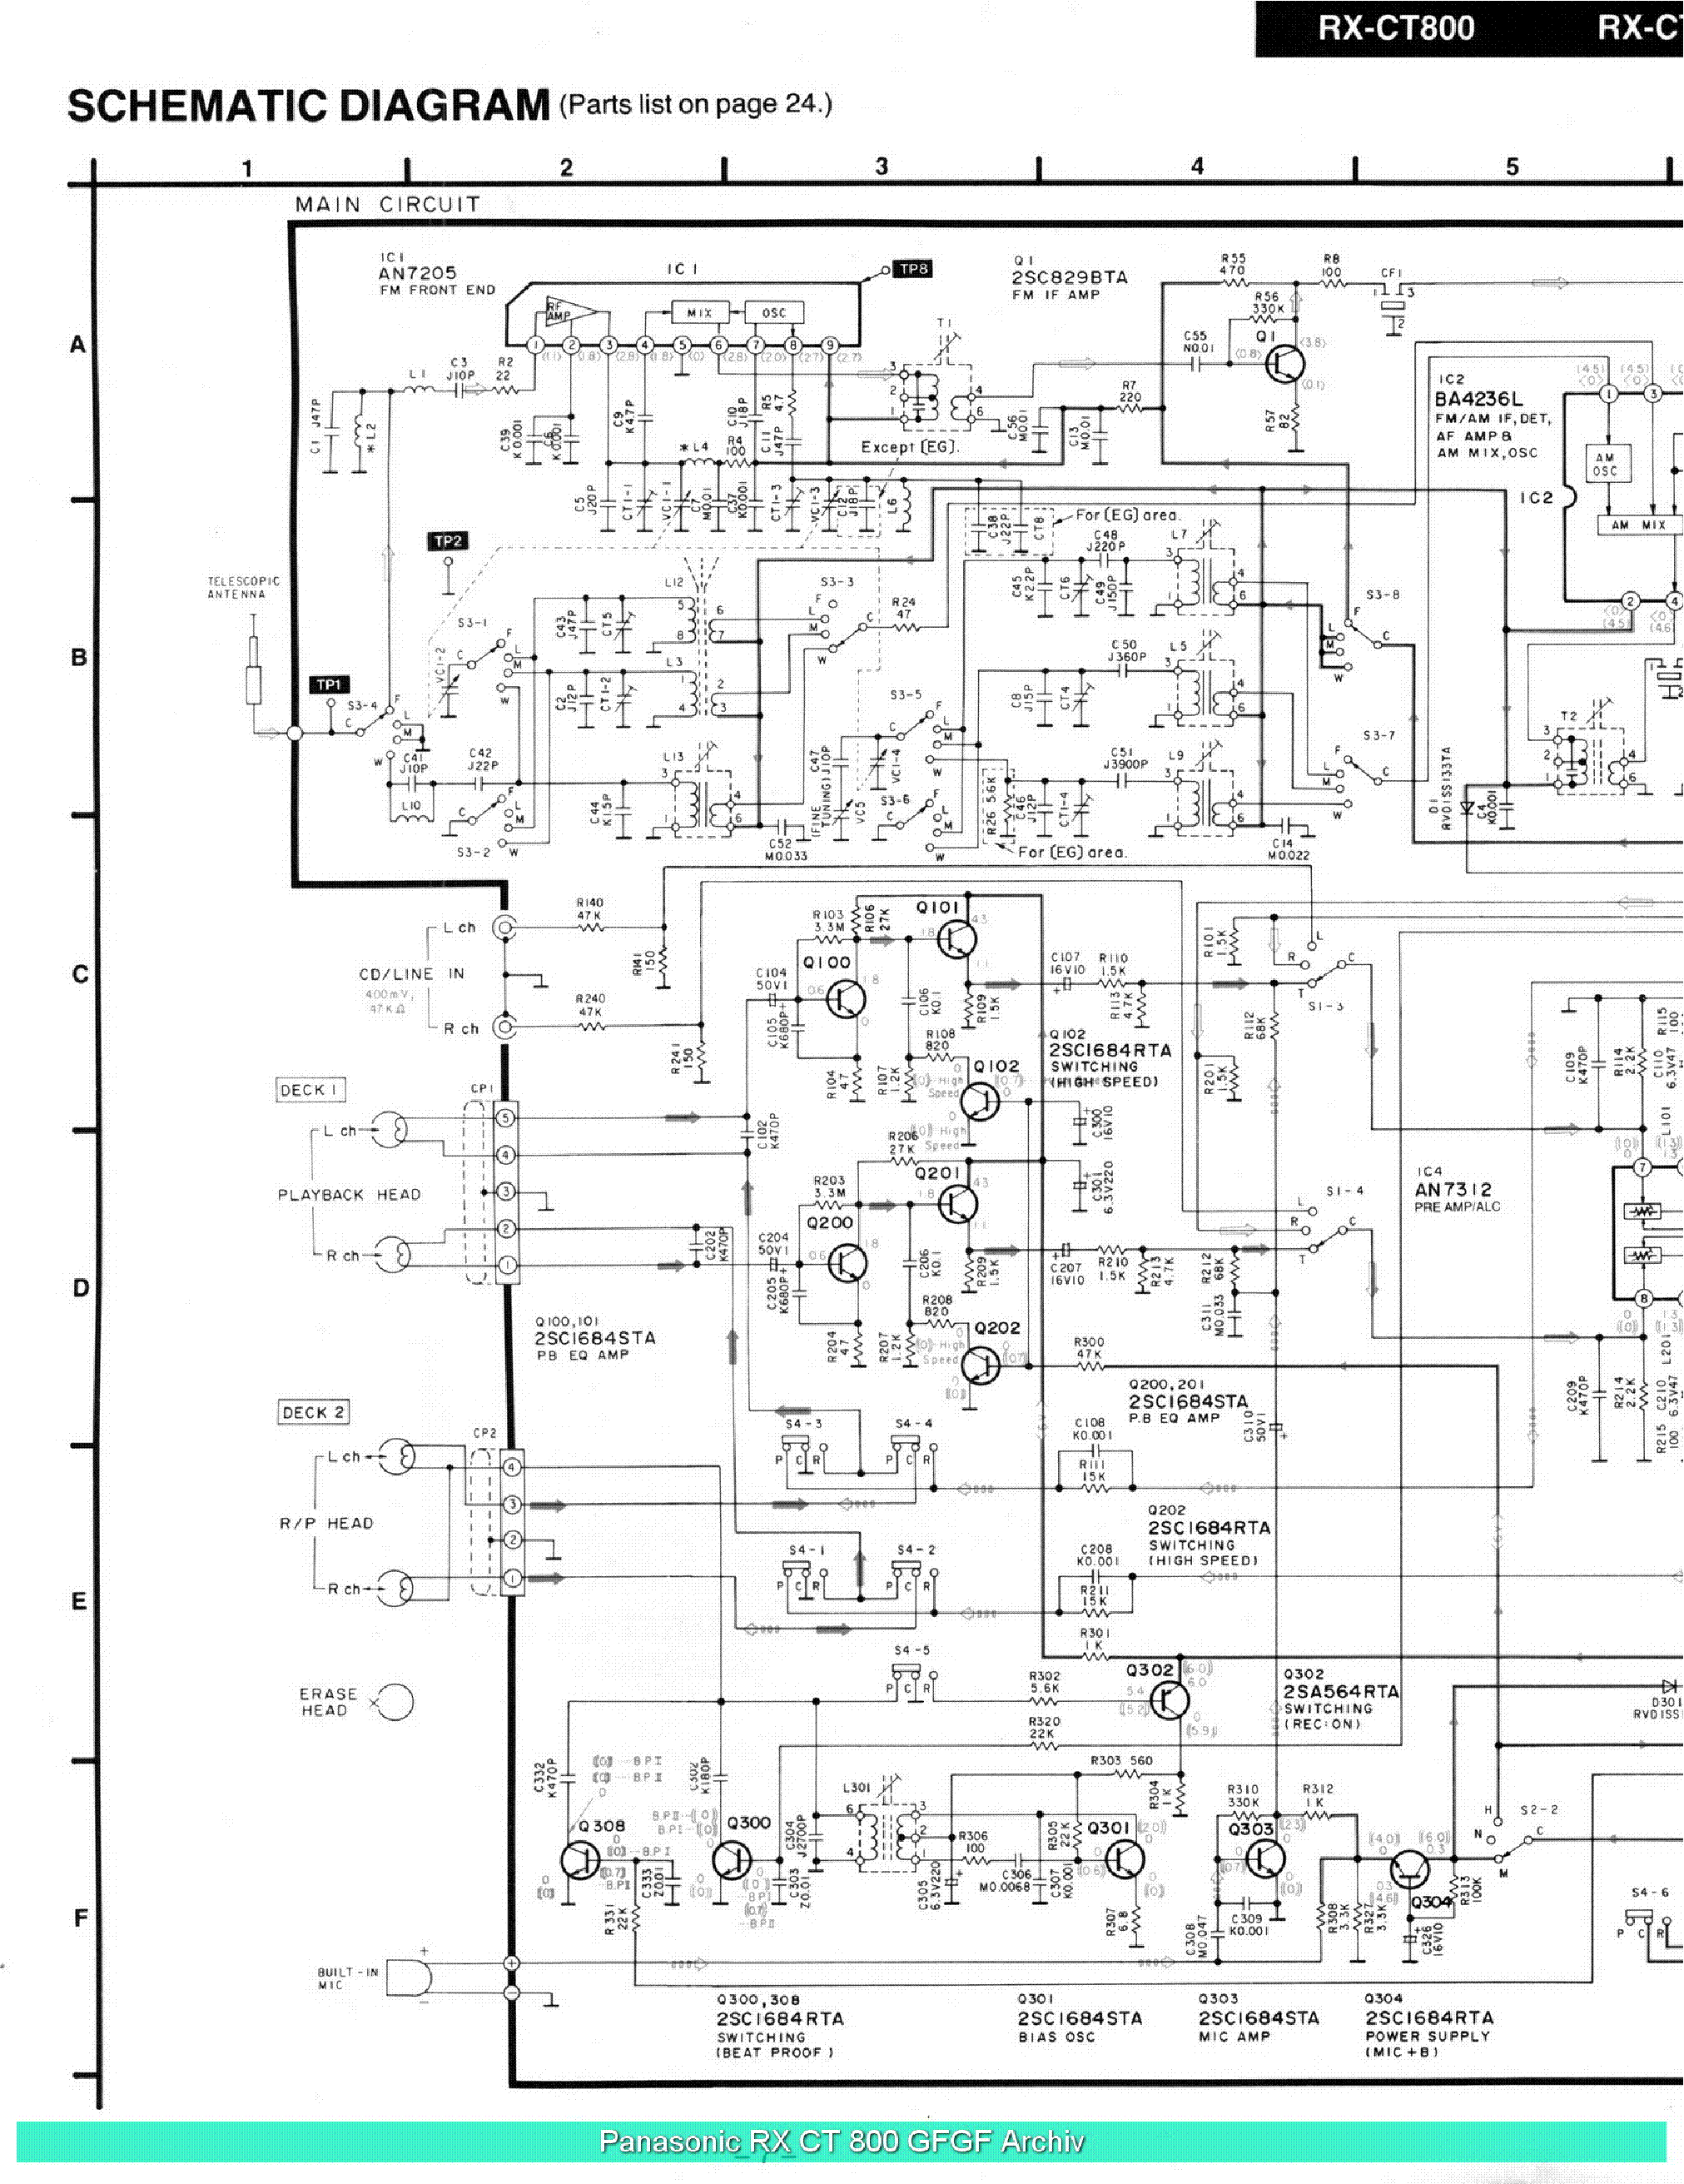 PANASONIC RX-CT800 SM service manual (2nd page)